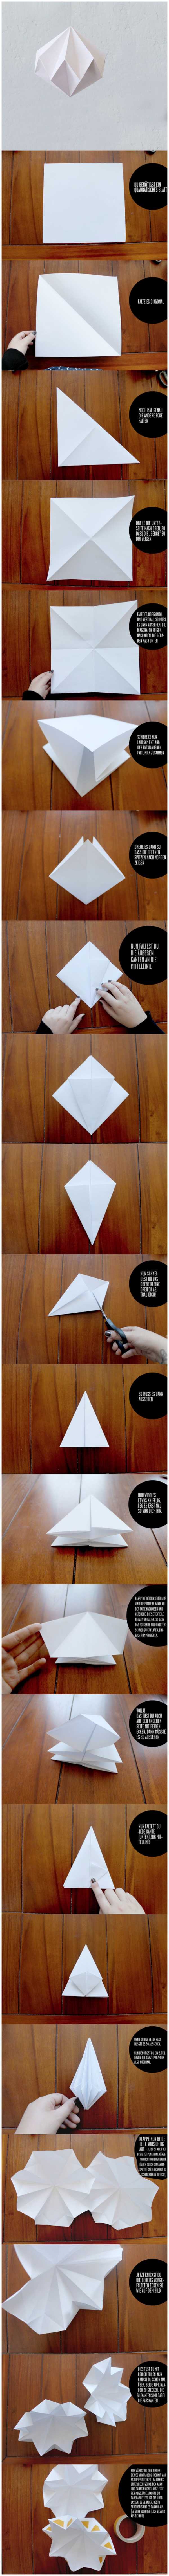 Шар бумажный абажур – Люстра из бумаги - как сделать светильник своими руками